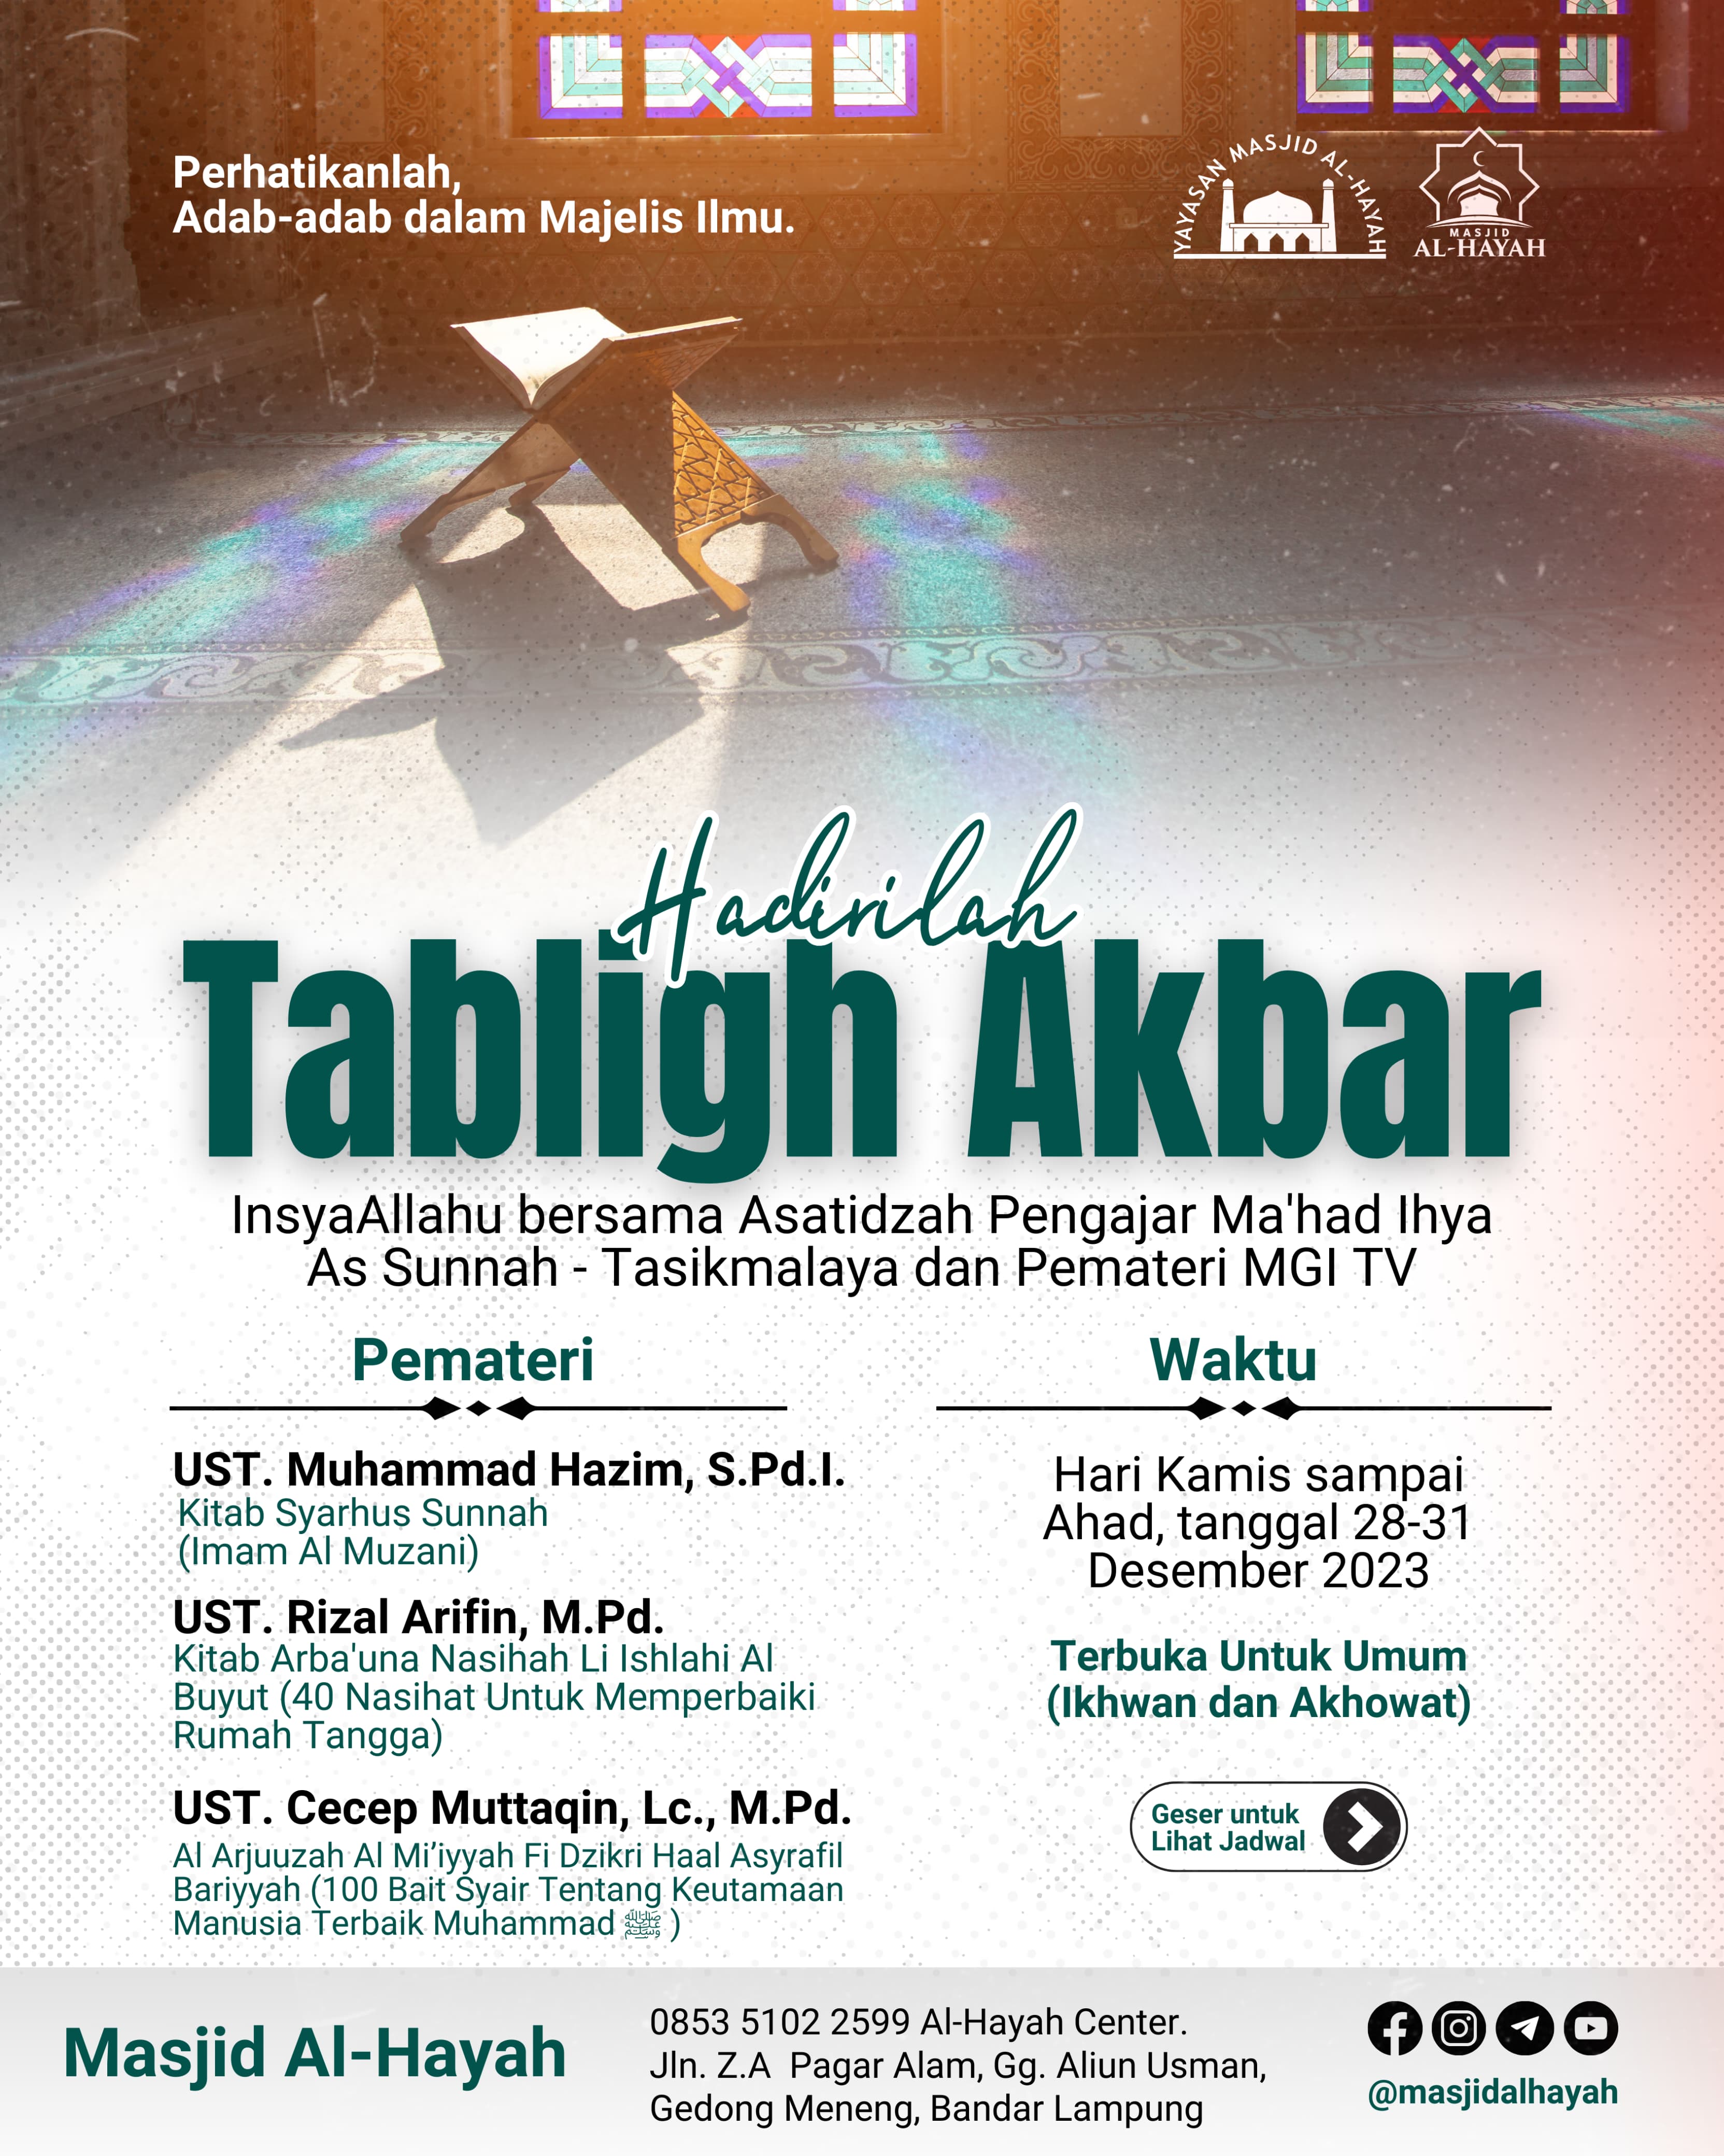 TABLIGH AKBAR : 3 Asatidzah Ma'had Ihya As Sunnah-Tasikmalaya Di Masjid Al Hayah Bandar Lampung